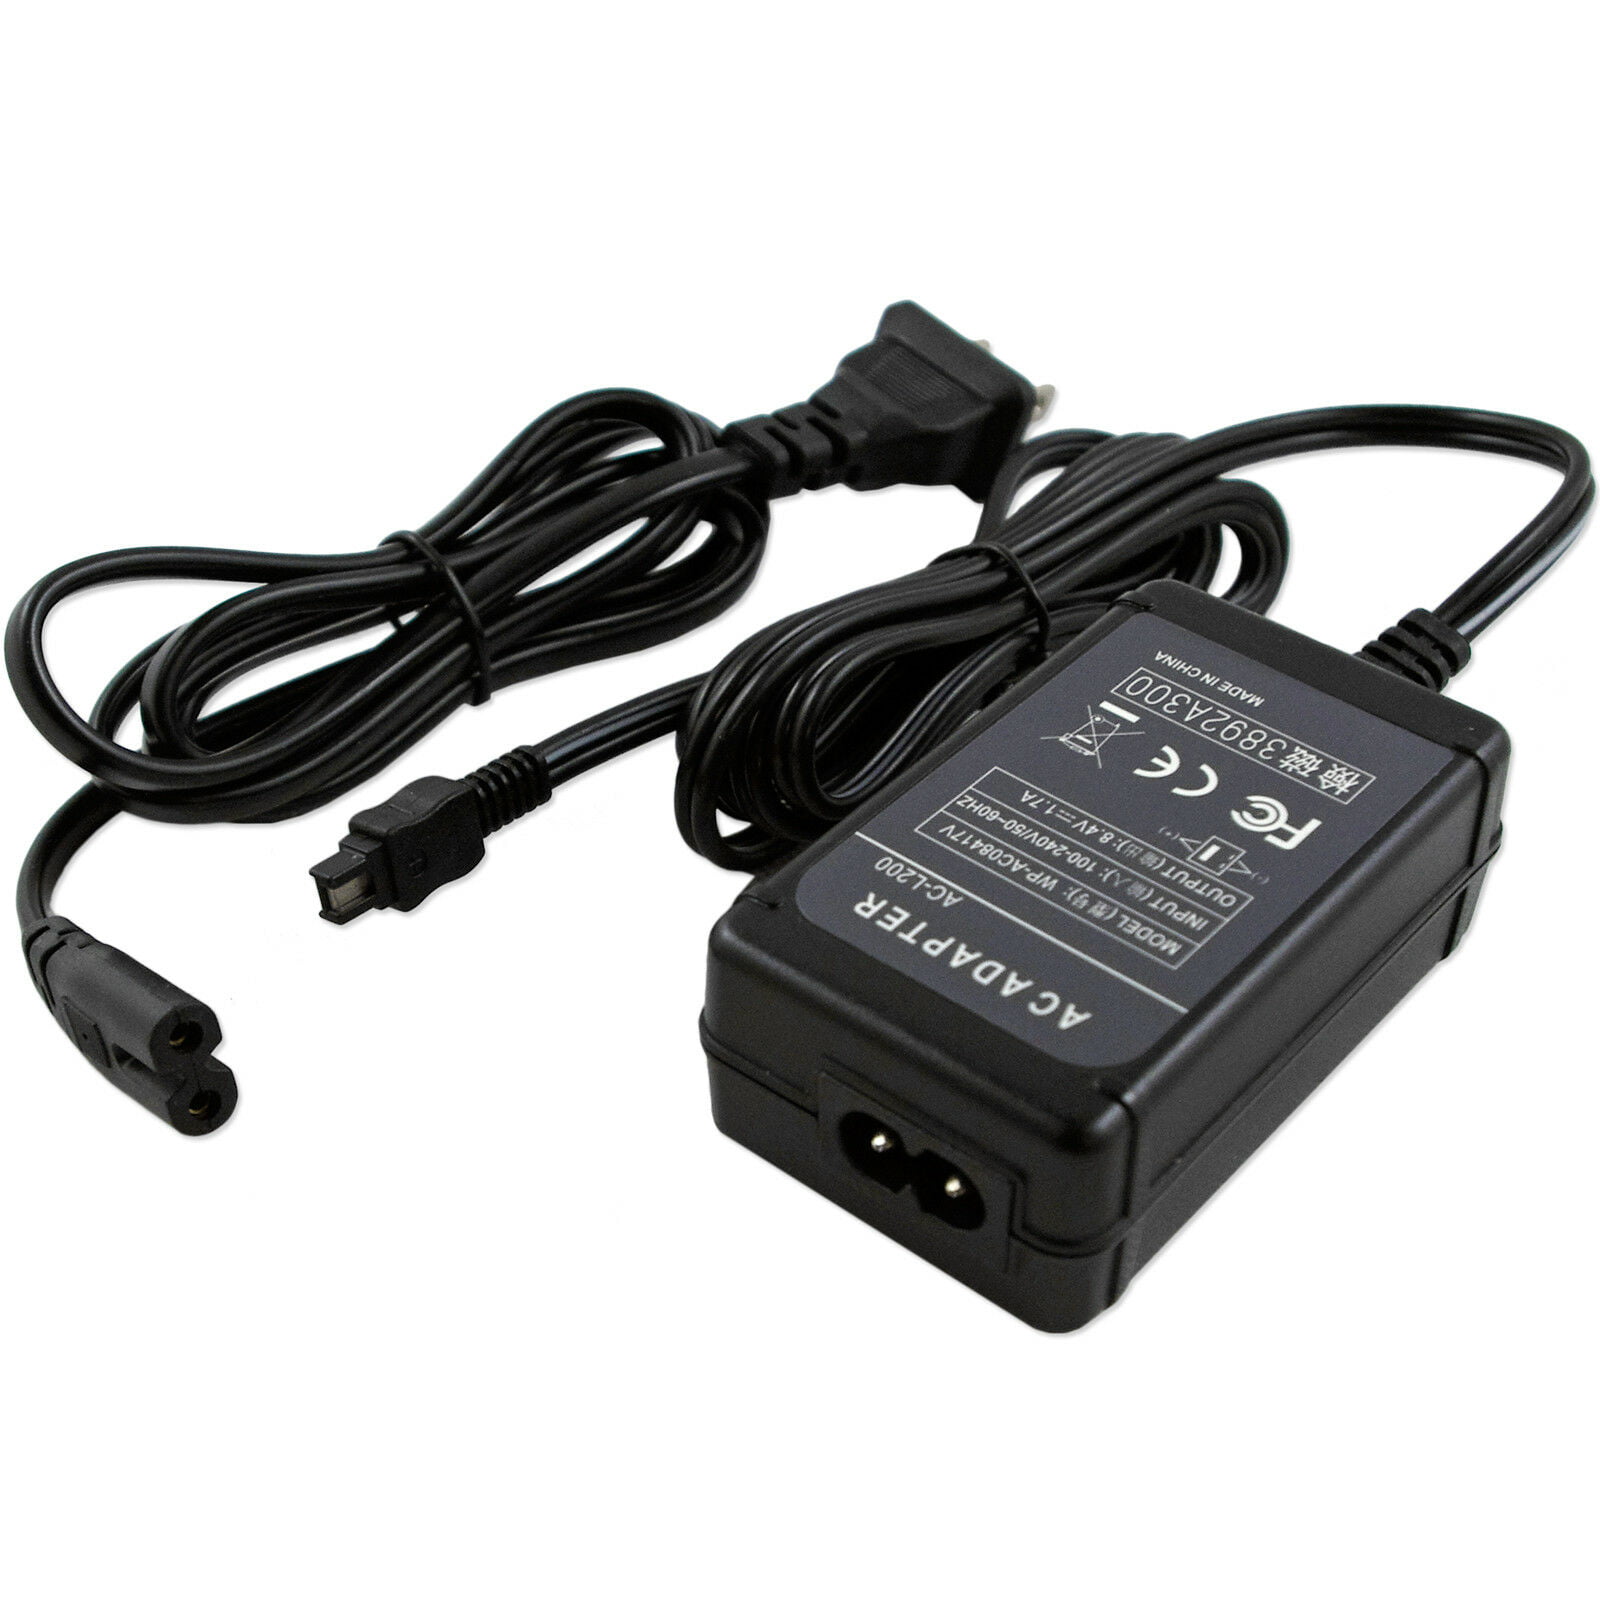 AC Adapter Power Supply for Sony DCR-HC19E DCR-HC28 DCR-HC24E DCR-HC38 DCR-DVD8 